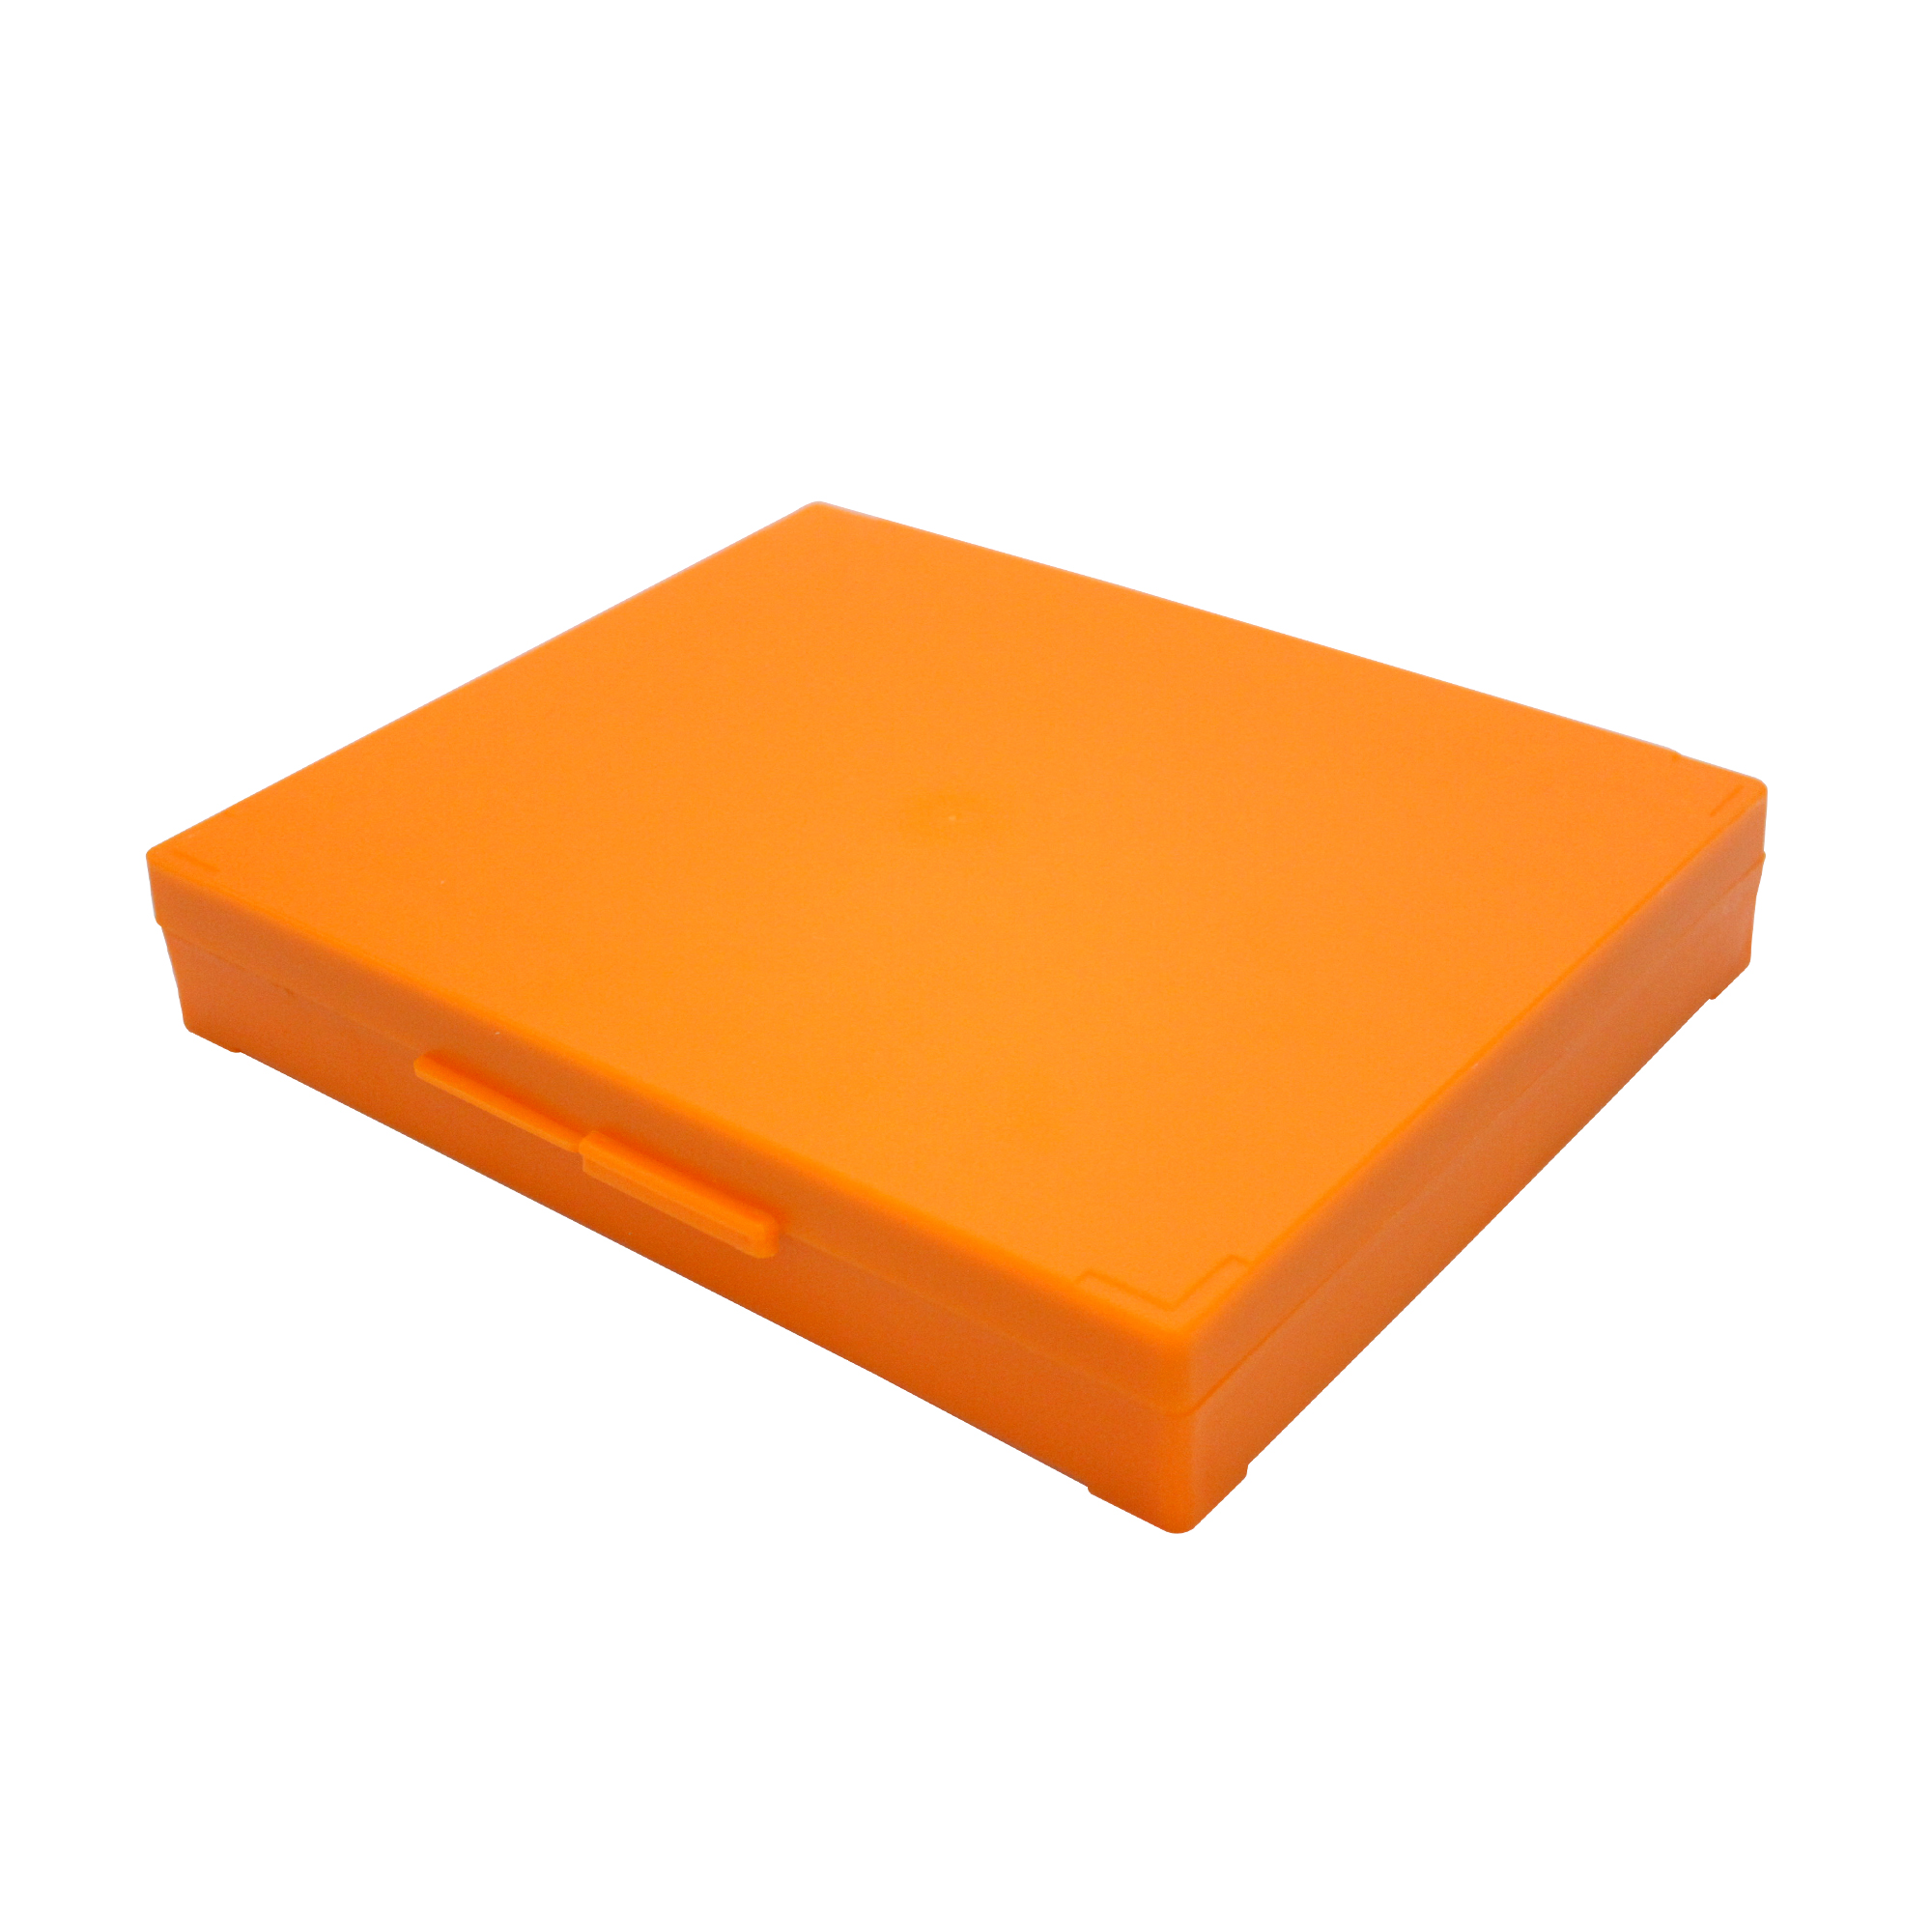 100片装载玻片存储盒,橘色